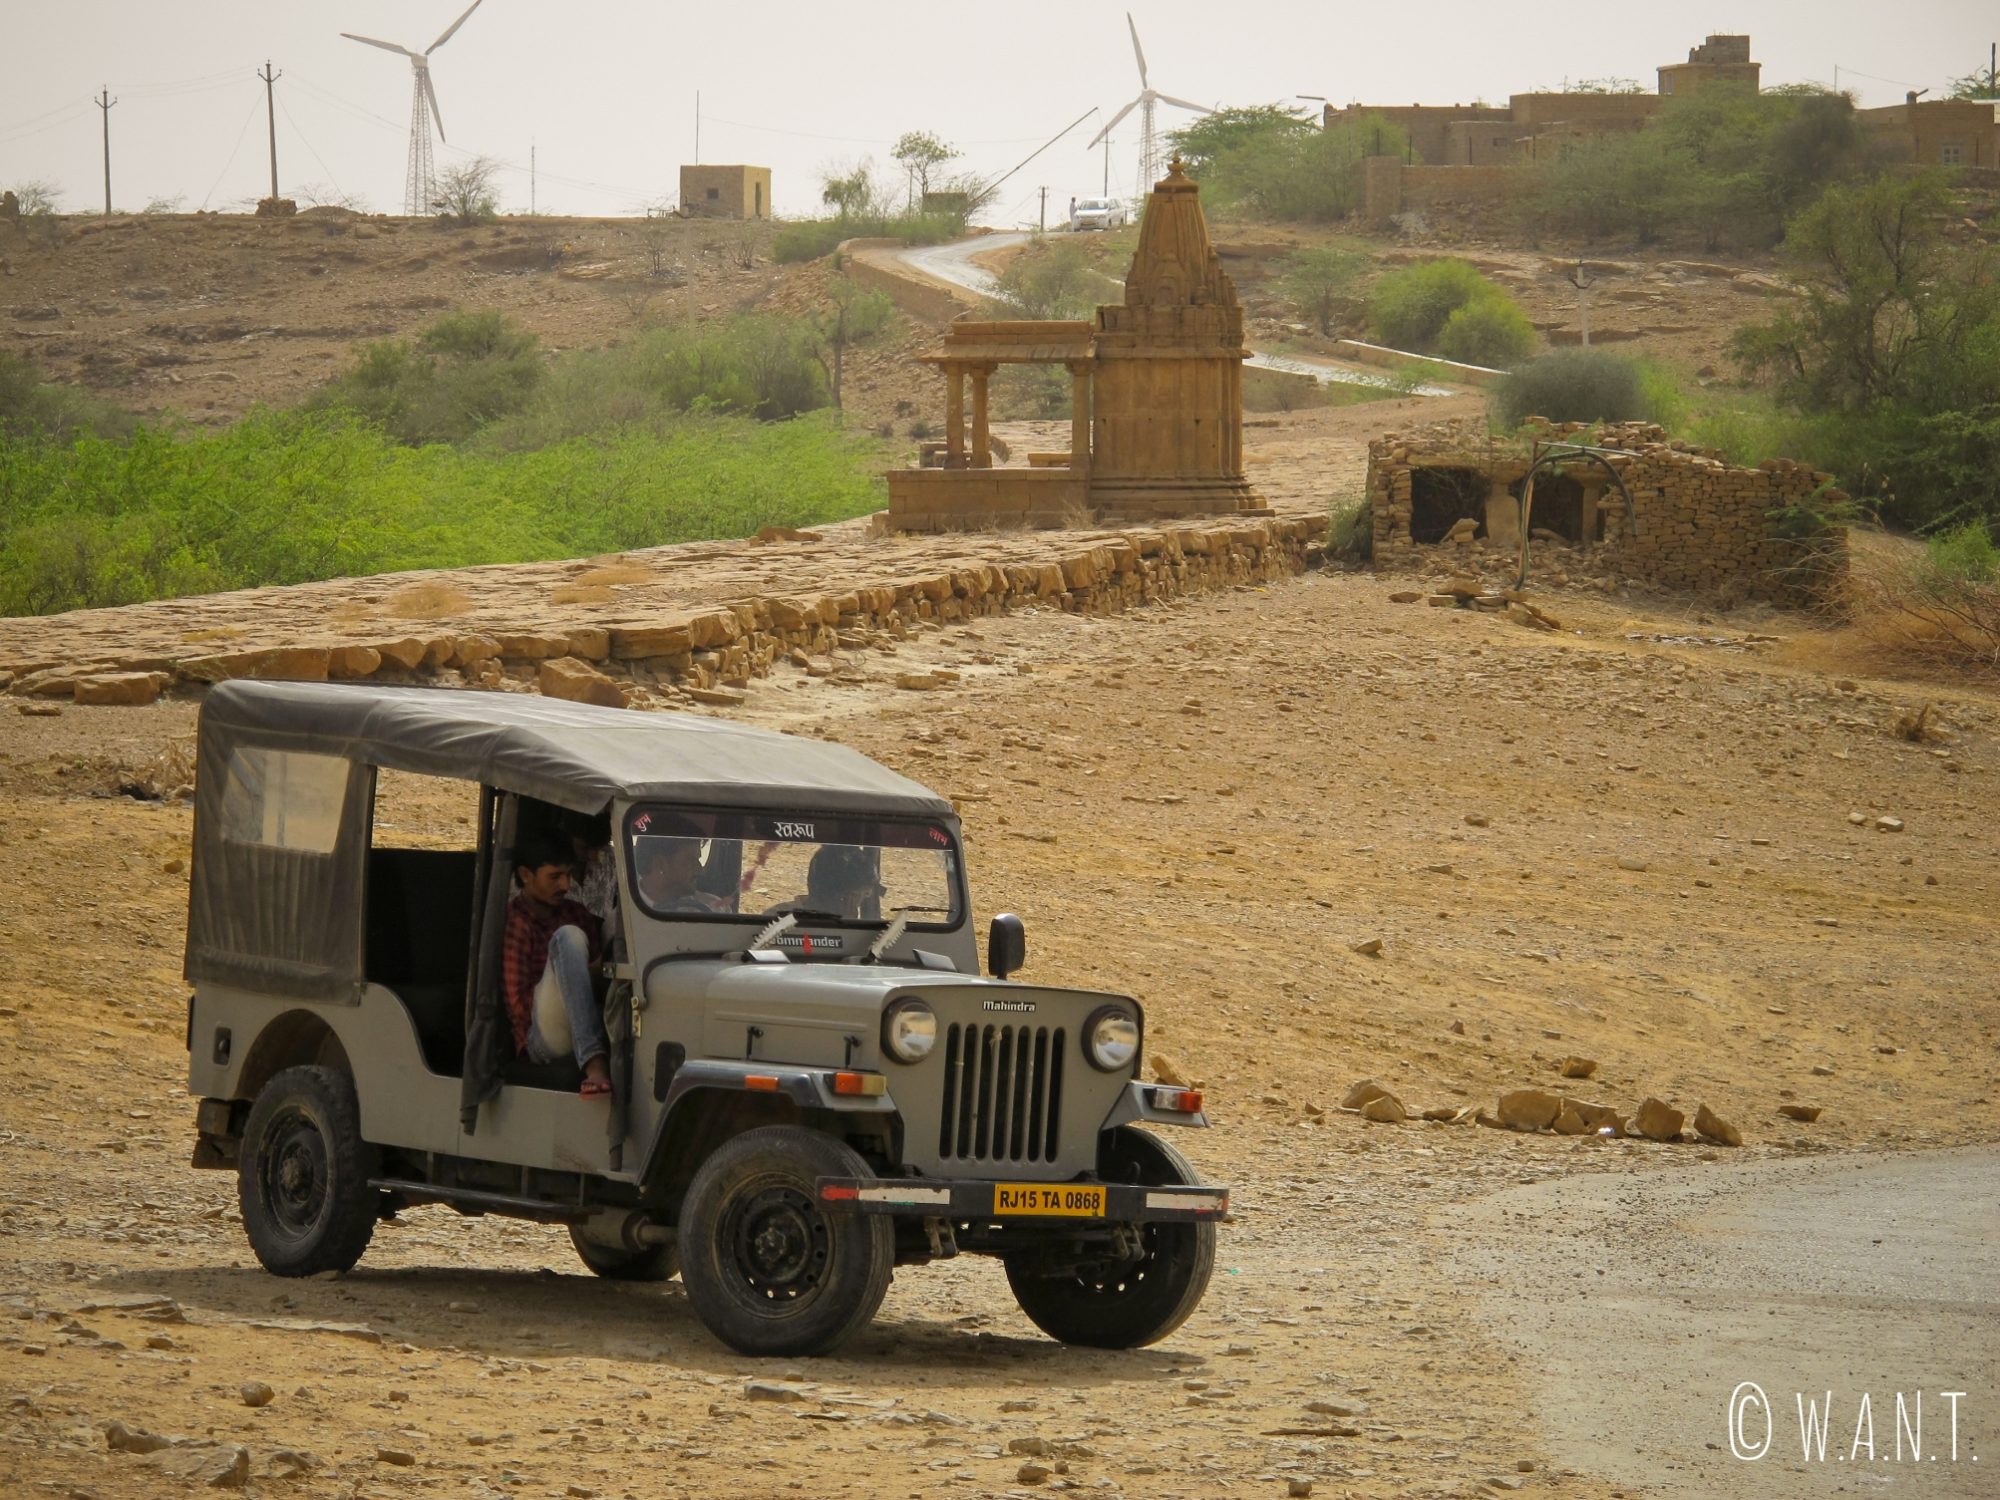 Notre véhicule est un Mahindra tout terrain pour se rendre aux portes du désert